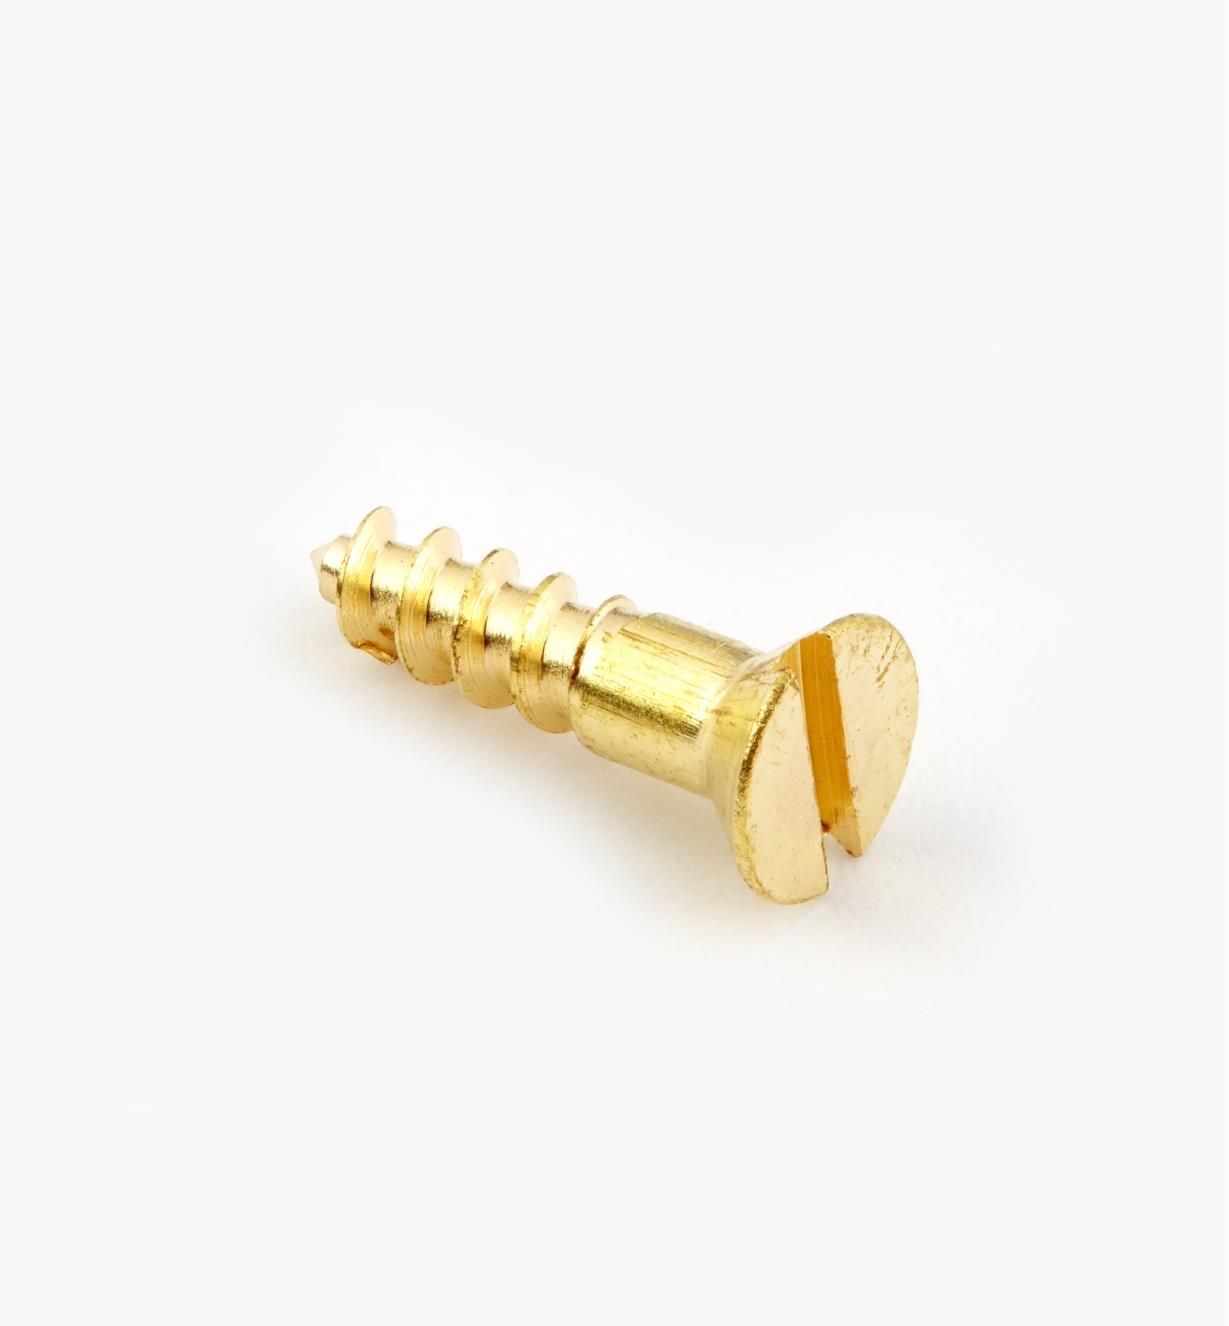 91Z0503 - #5, 1/2" Flat Brass Screws, pkg of 100